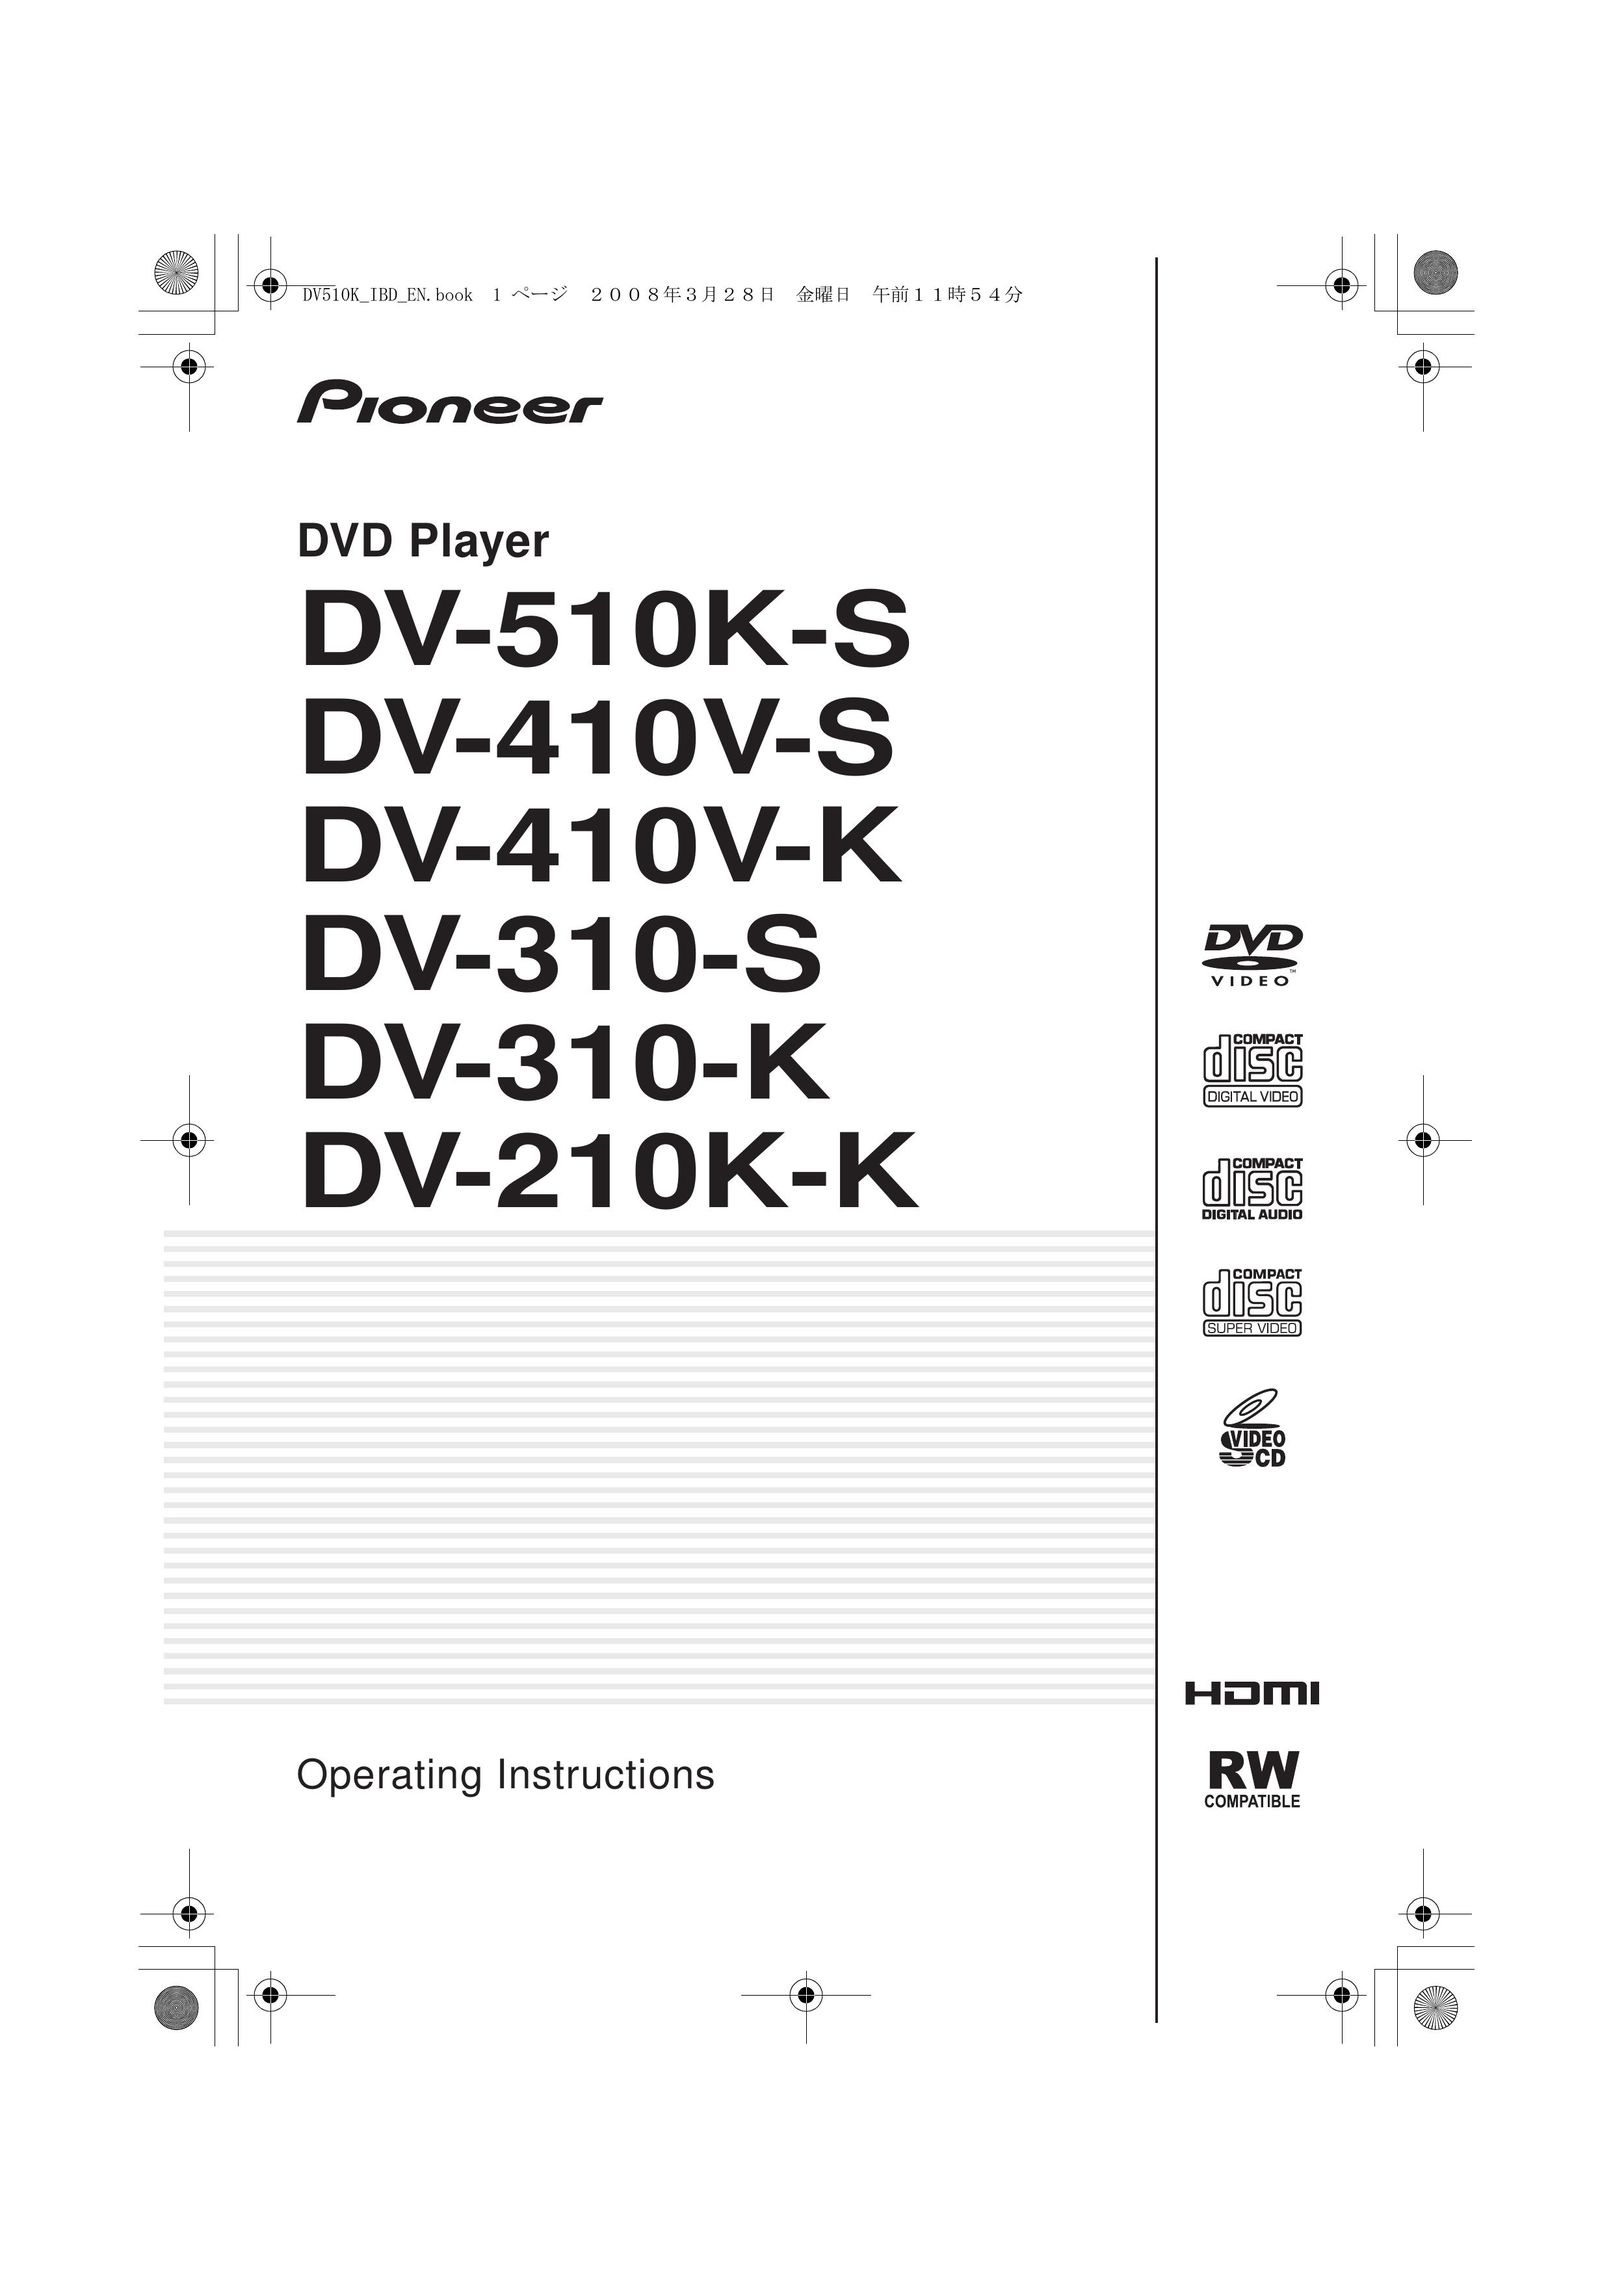 Pioneer DV-210K-K DVD Player User Manual